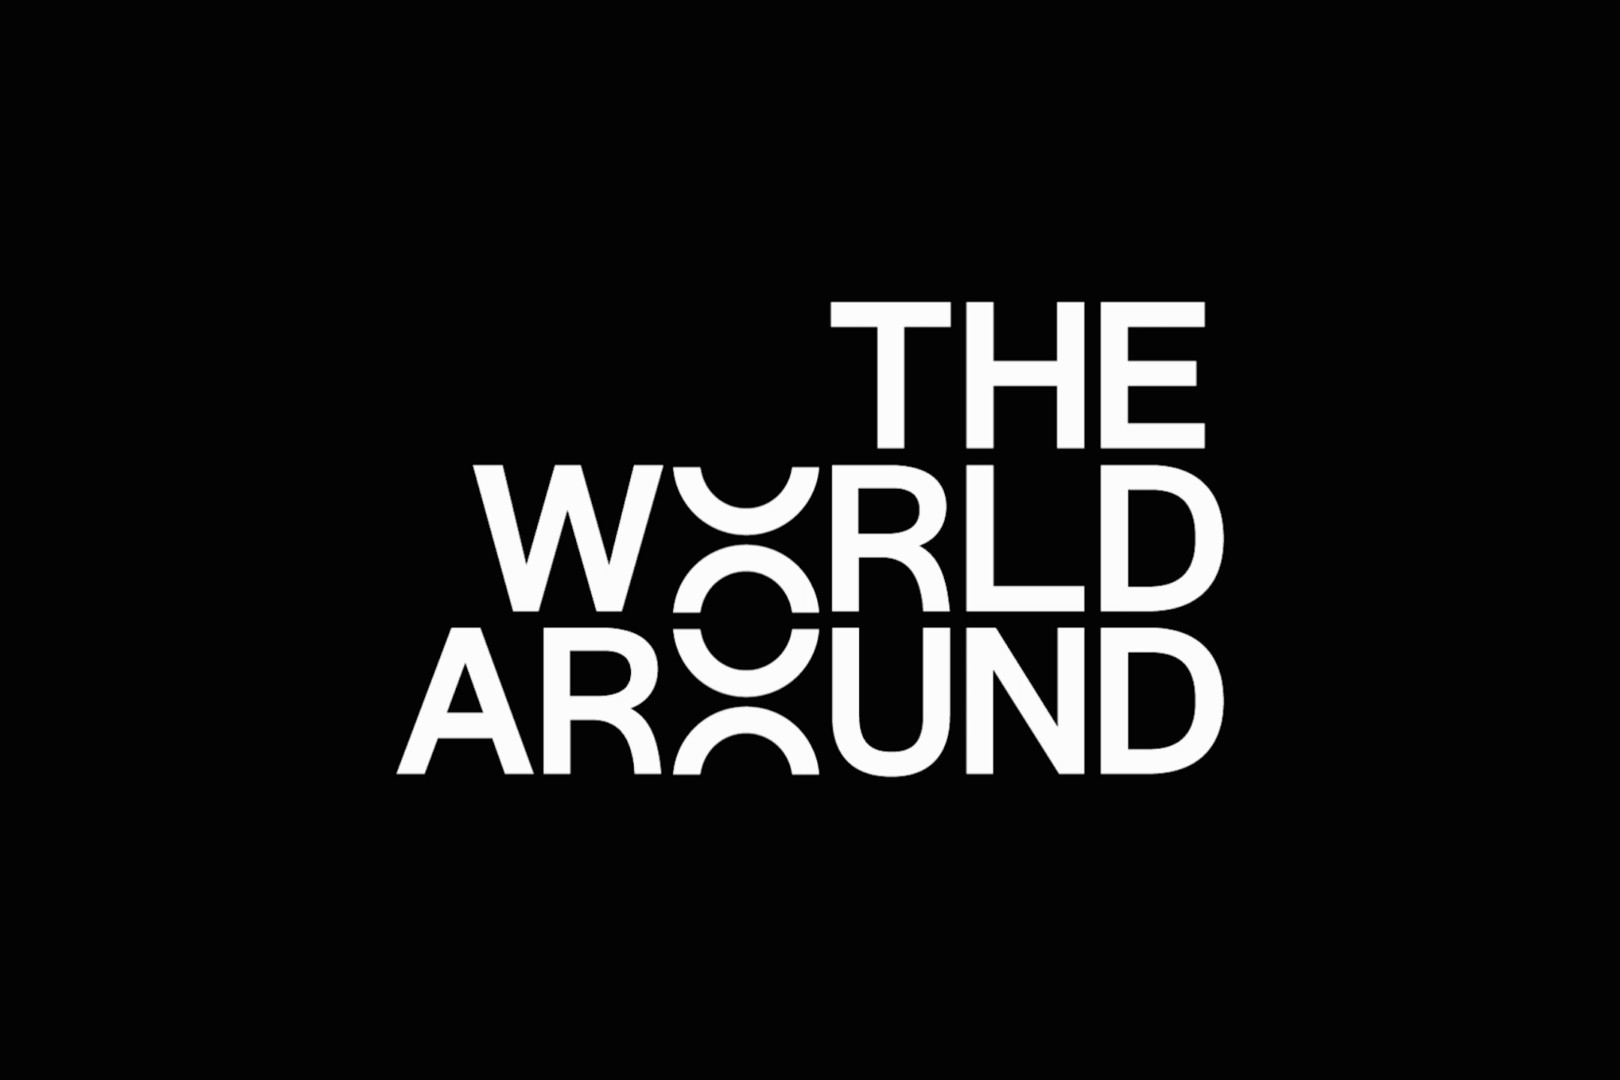 the-world-around-1620x1080.png